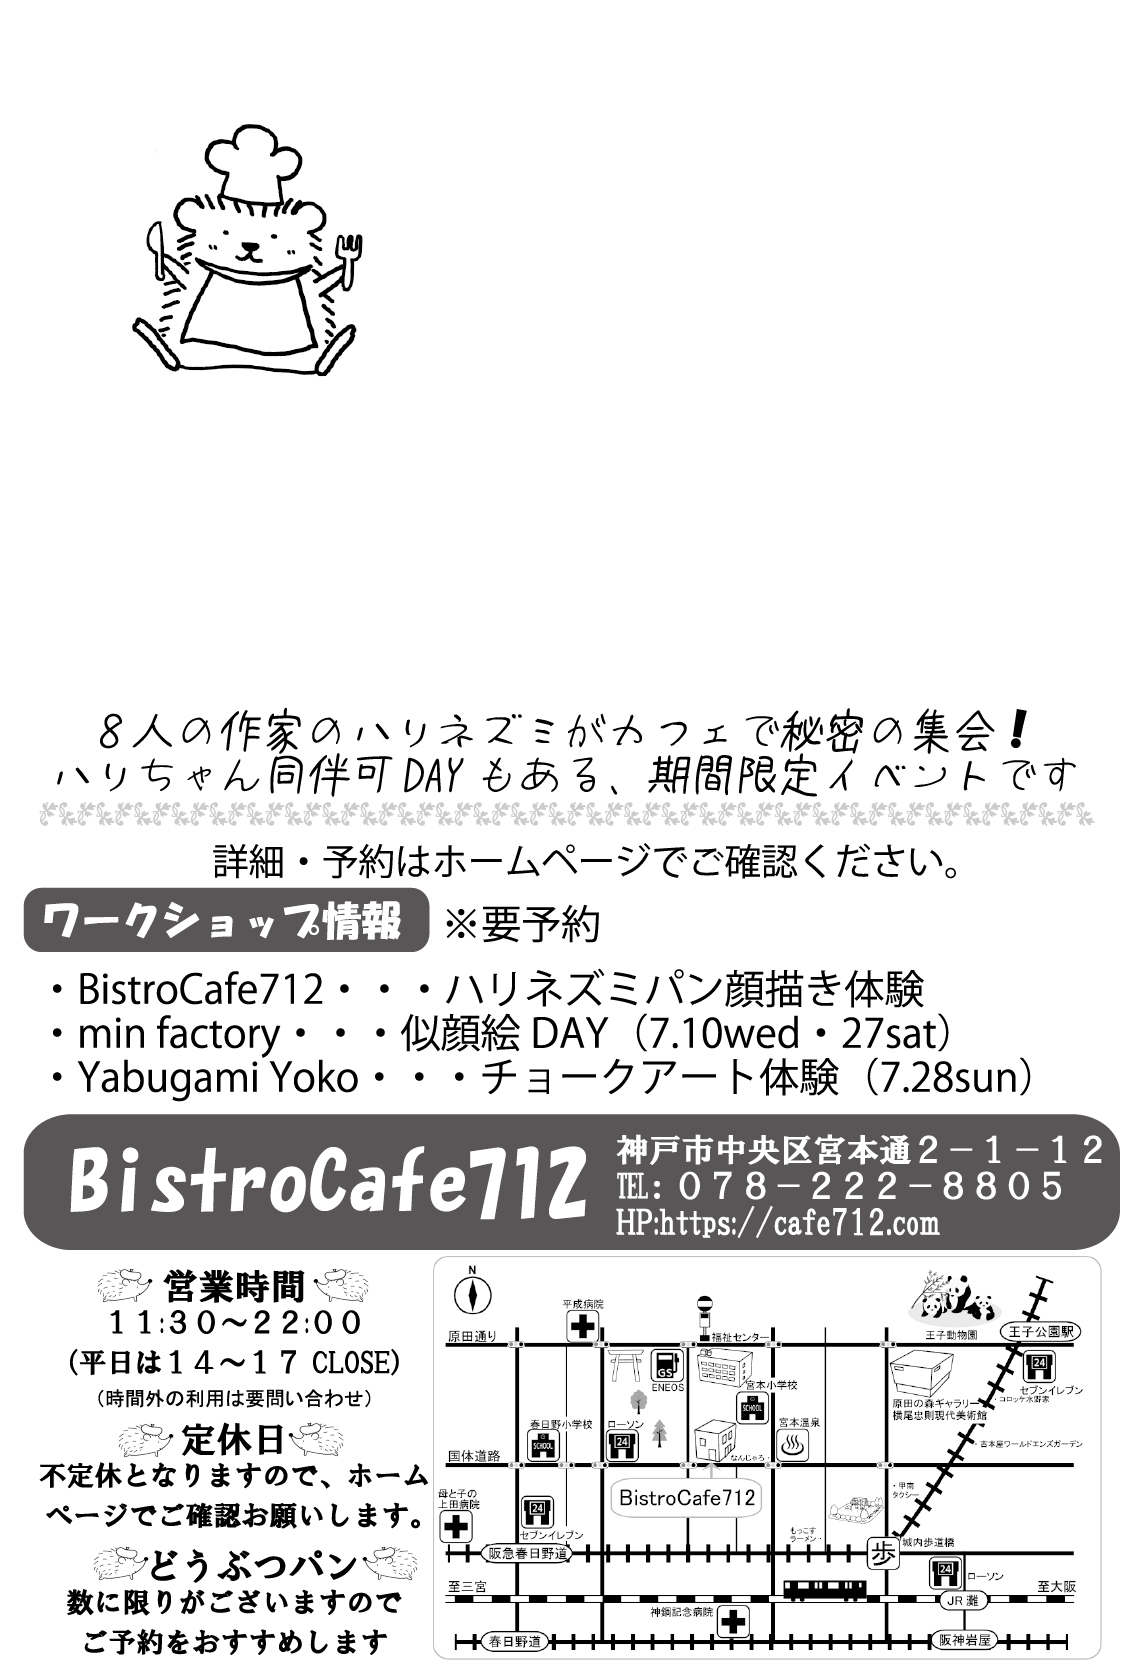 bistroCafe712